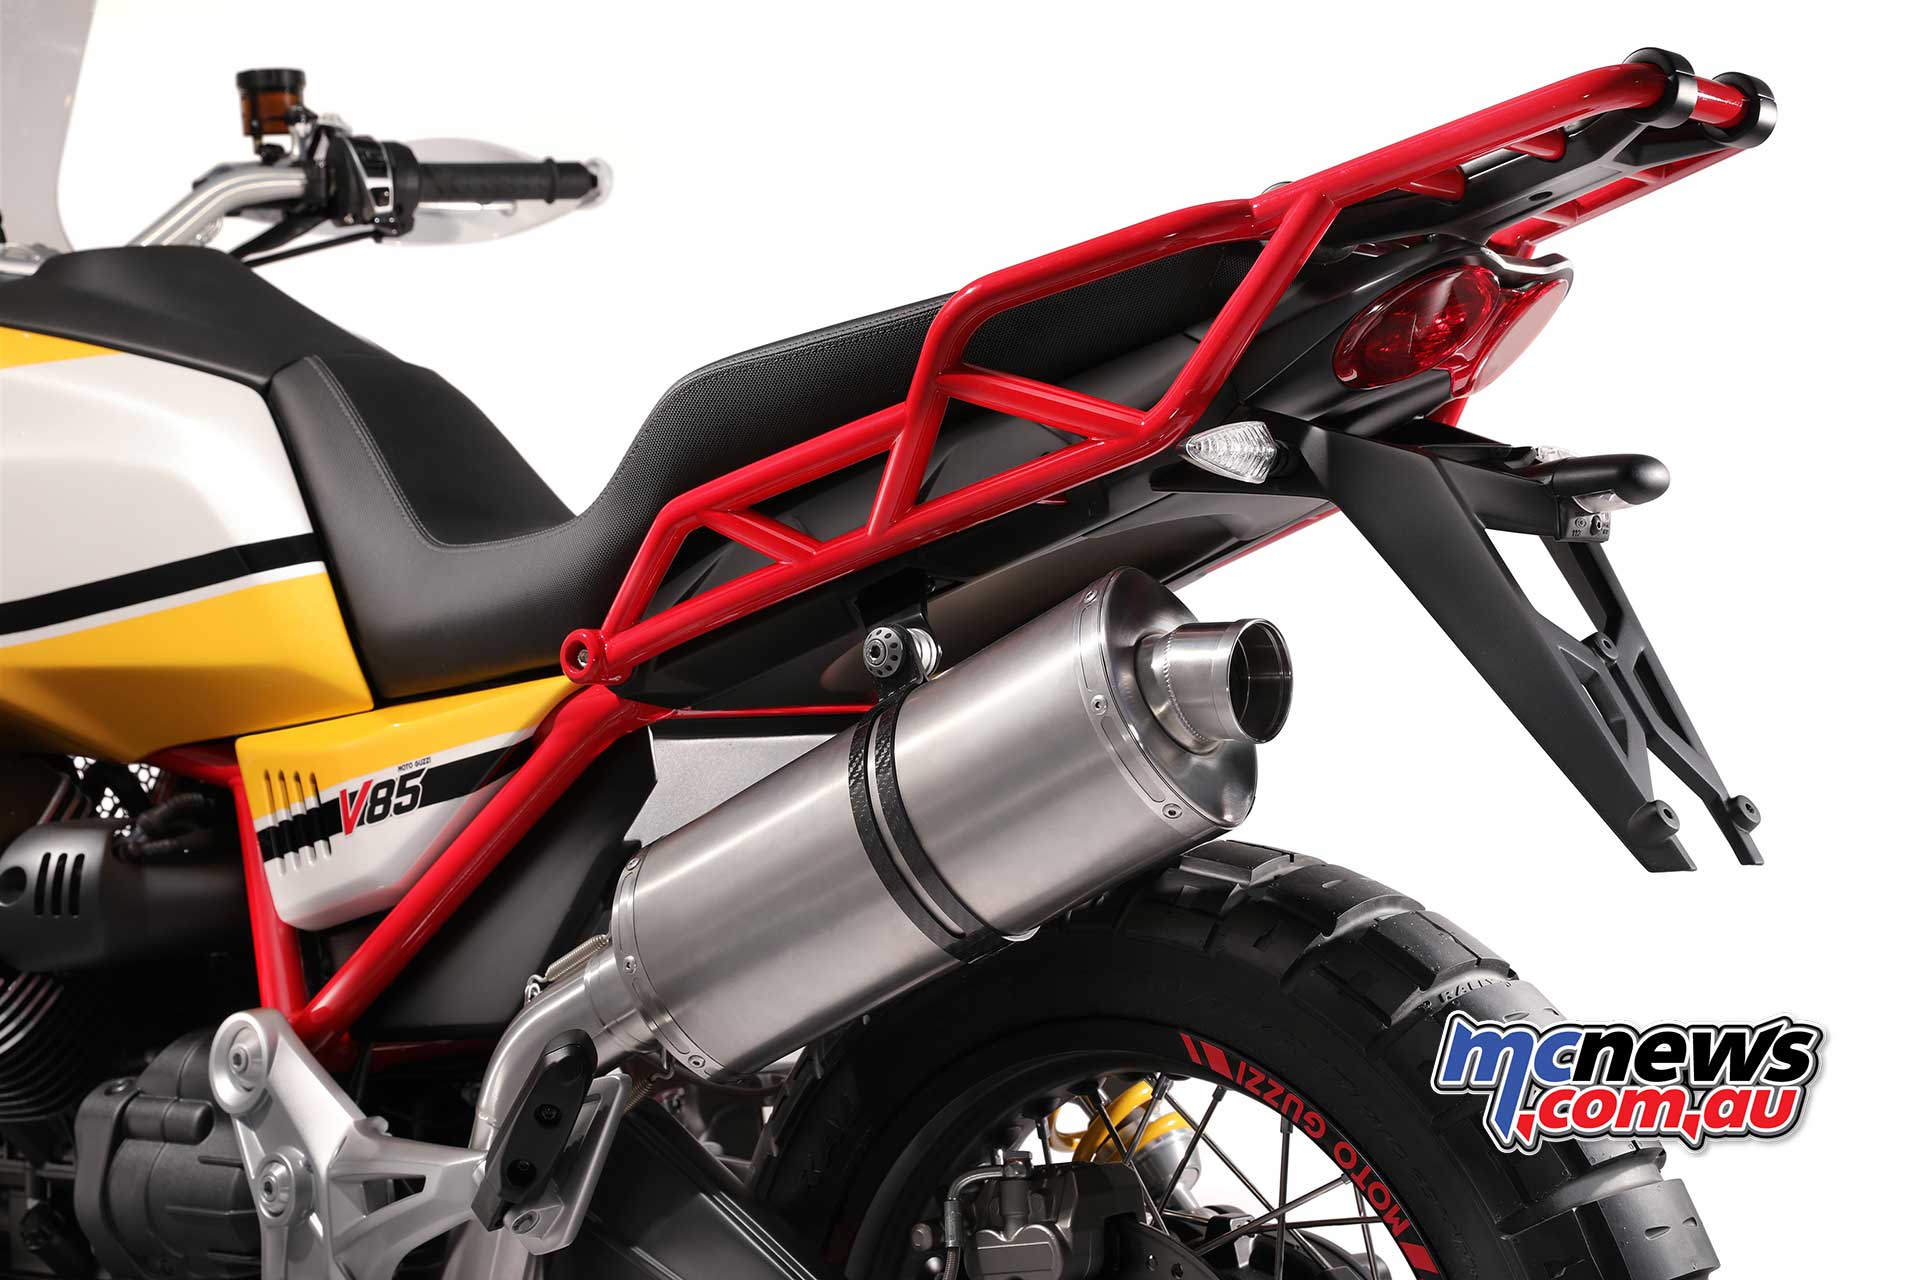 Moto Guzzi V85 80hp New 850cc Engine New Frame Mcnews Com Au Motorcycle News Sport And Reviews